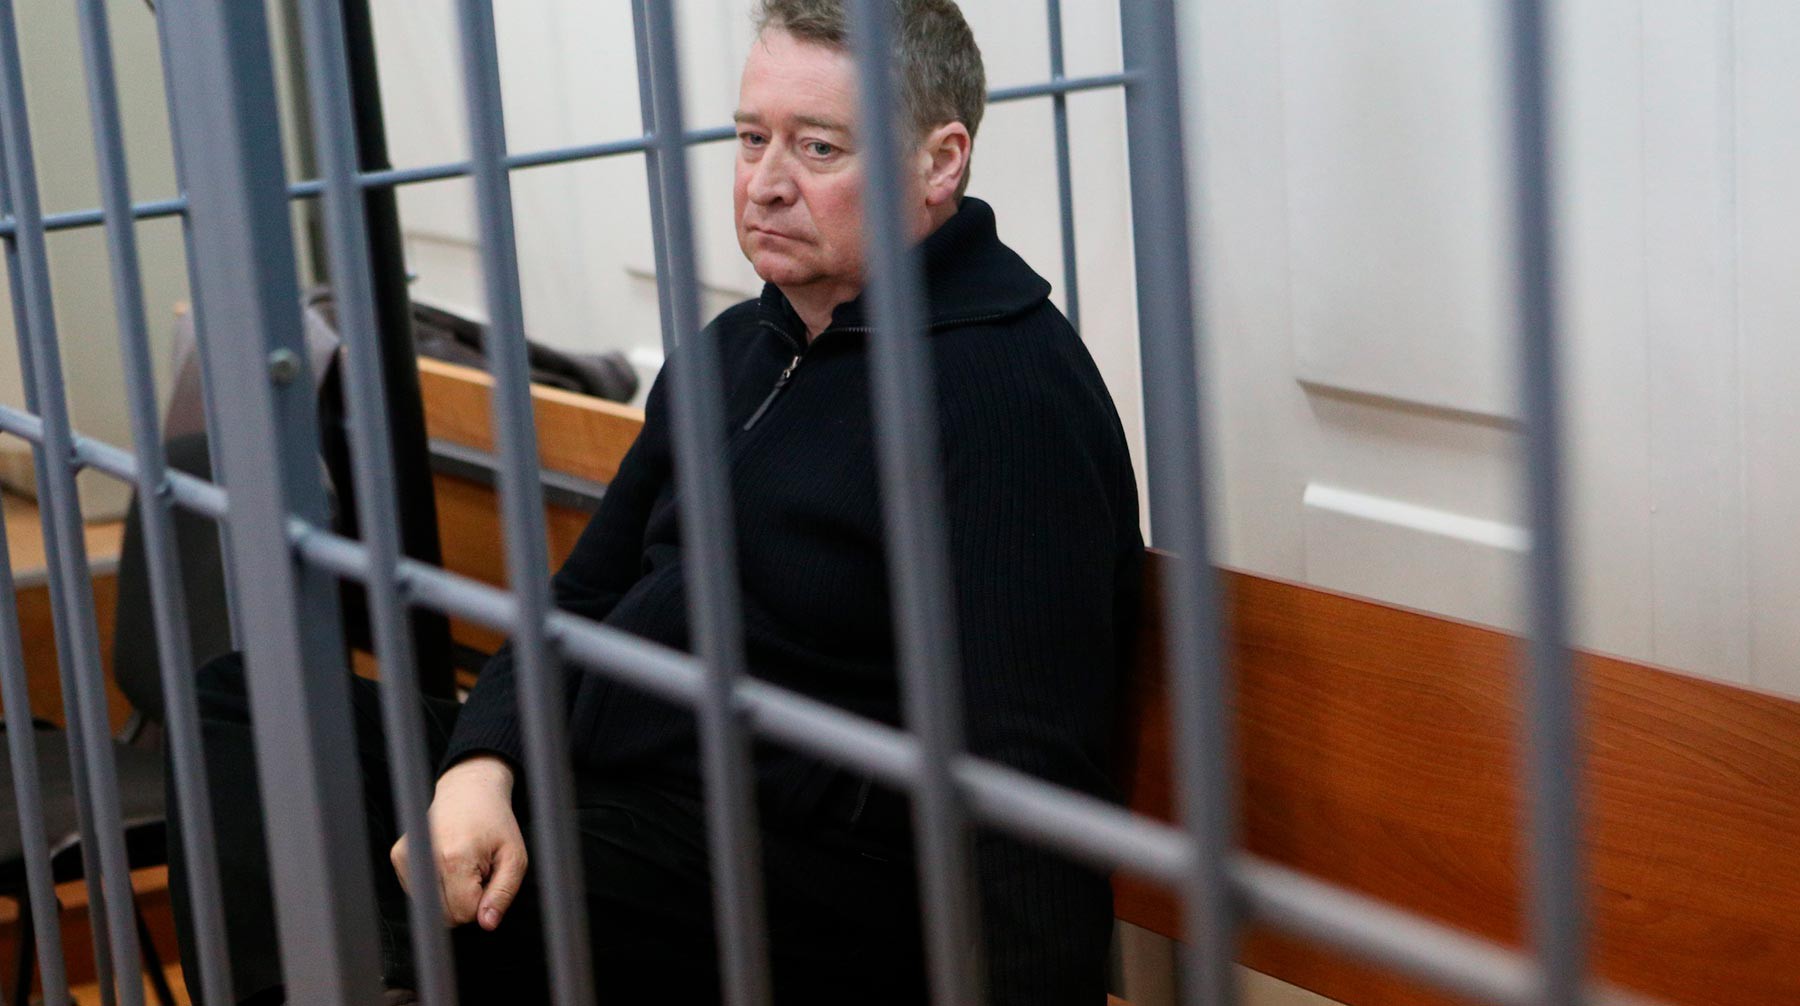 Dailystorm - 374 миллиона рублей экс-главы Марий Эл Маркелова изъяли в пользу государства